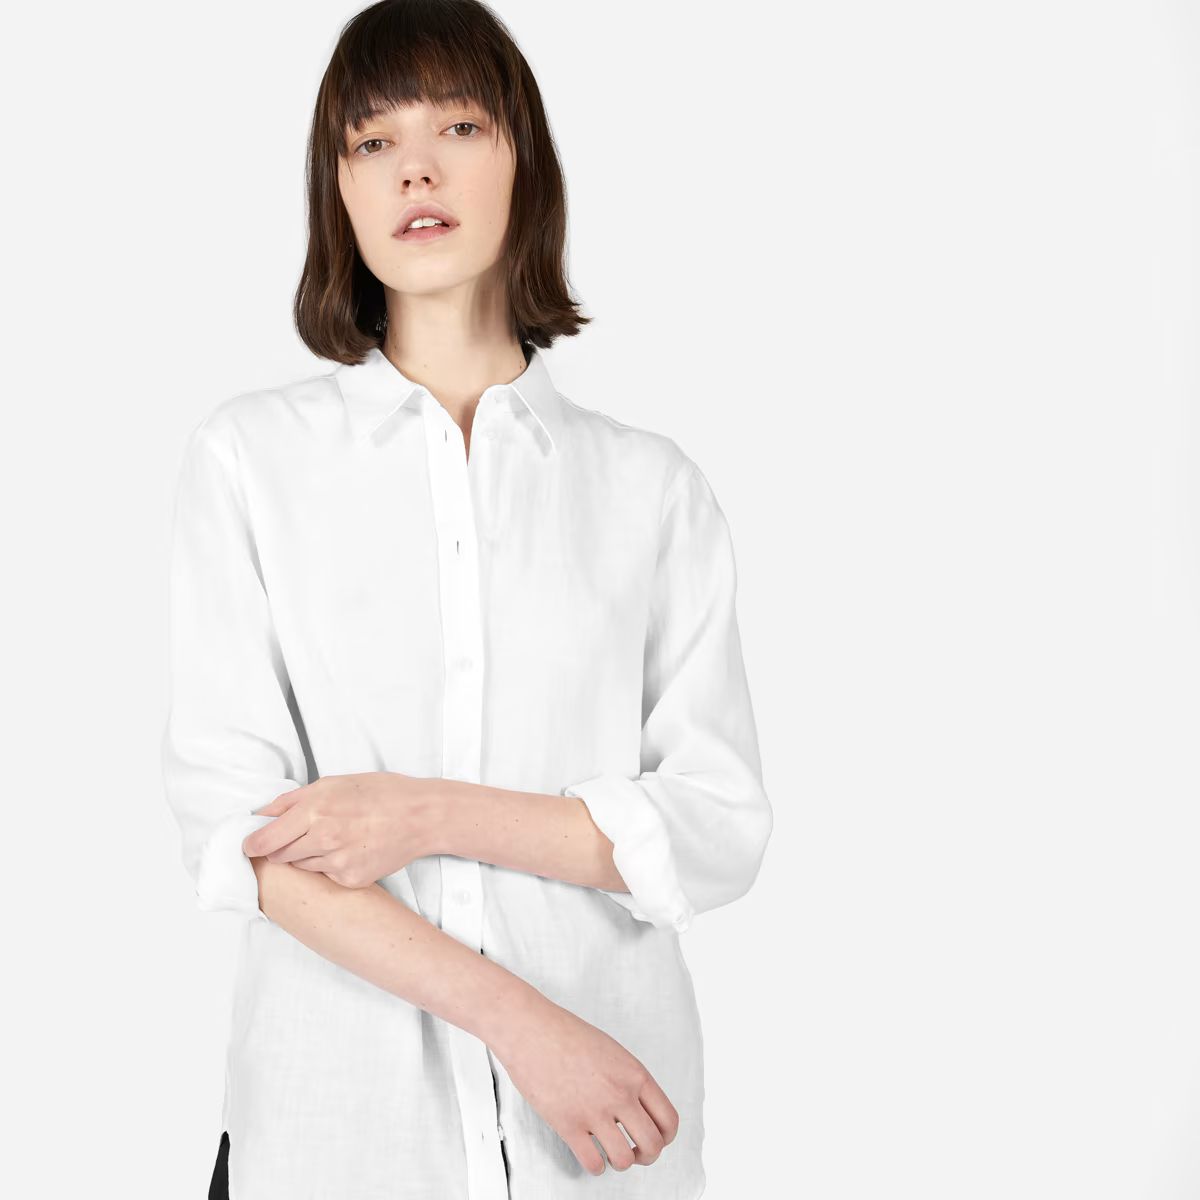 The Linen Relaxed Shirt | Everlane